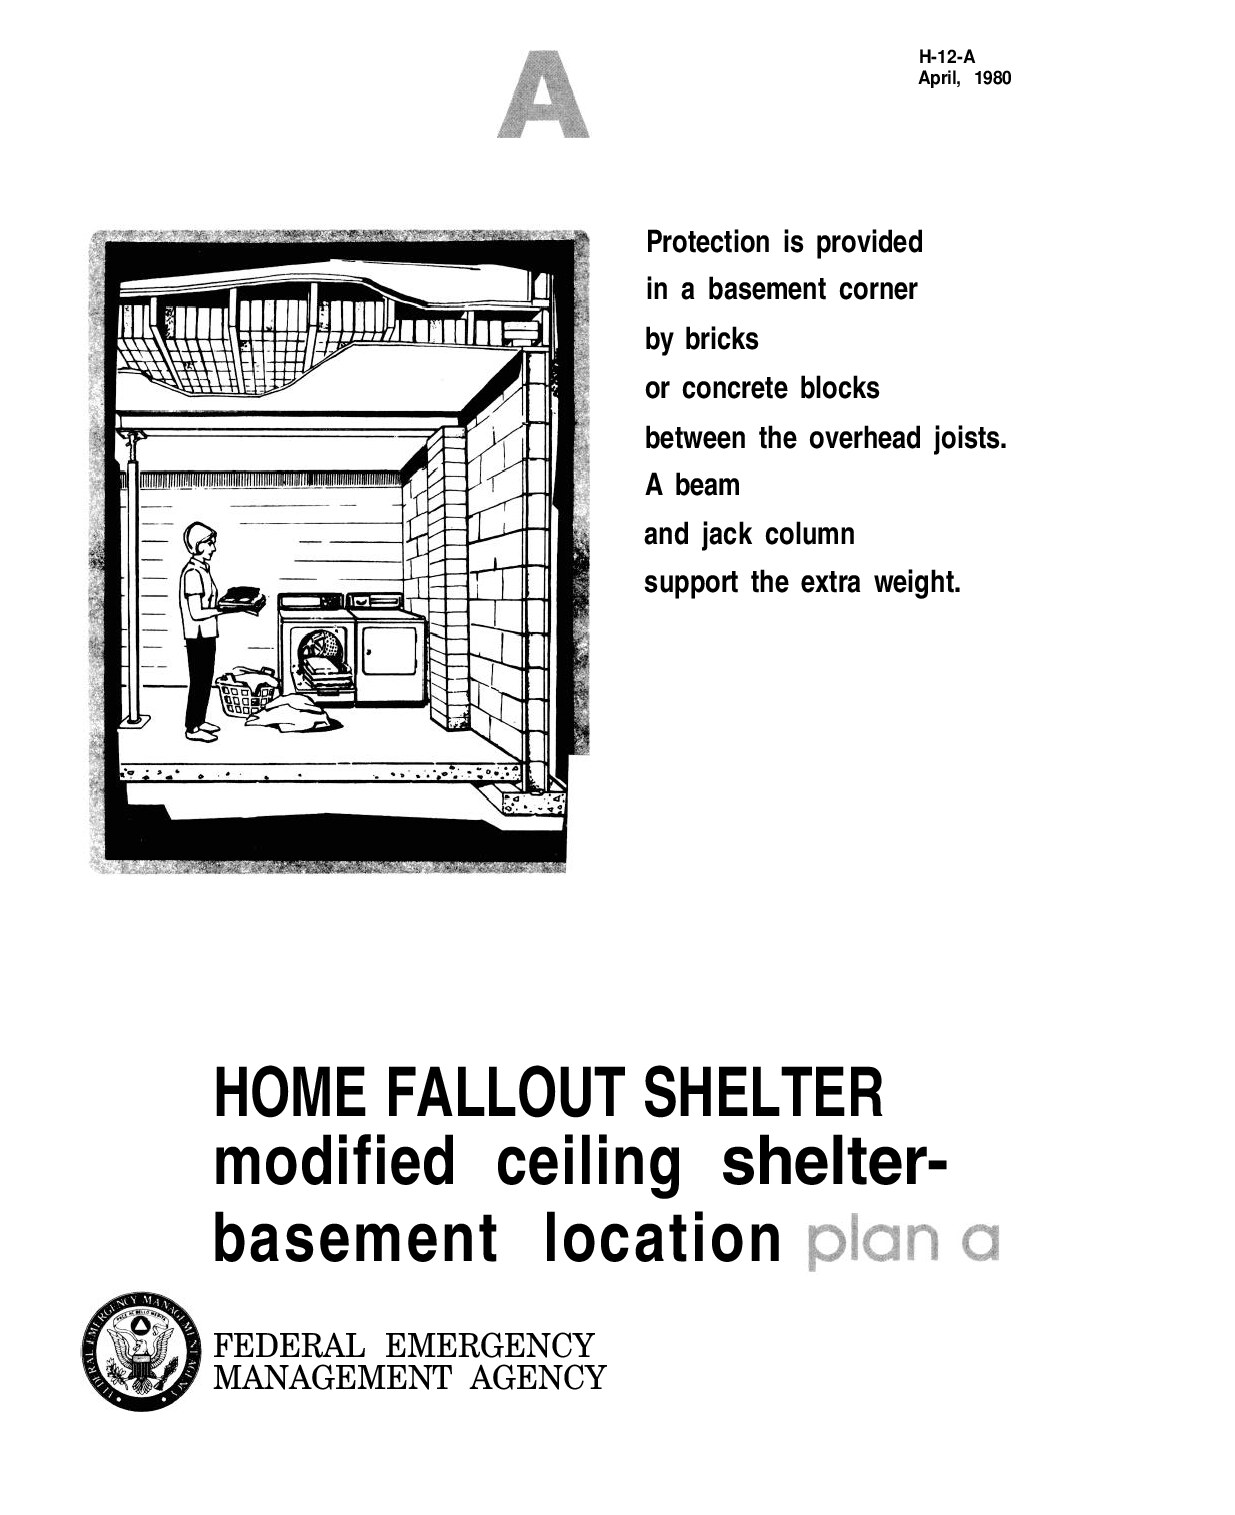 FEMA___Fallout_Shelter_H_12_A